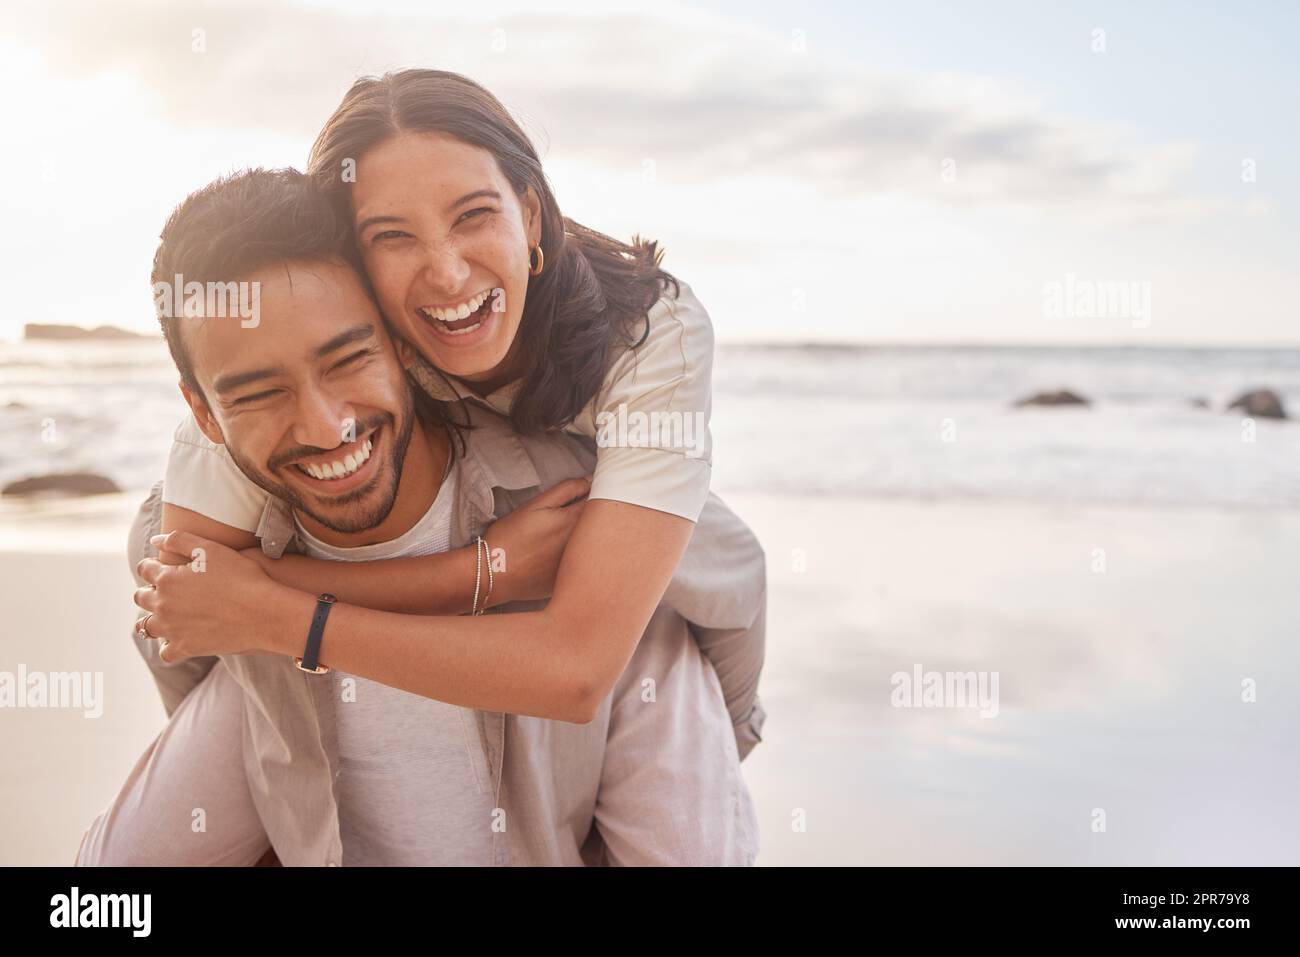 Hace que cada día sea emocionante. Una pareja disfrutando un día en la playa. Foto de stock